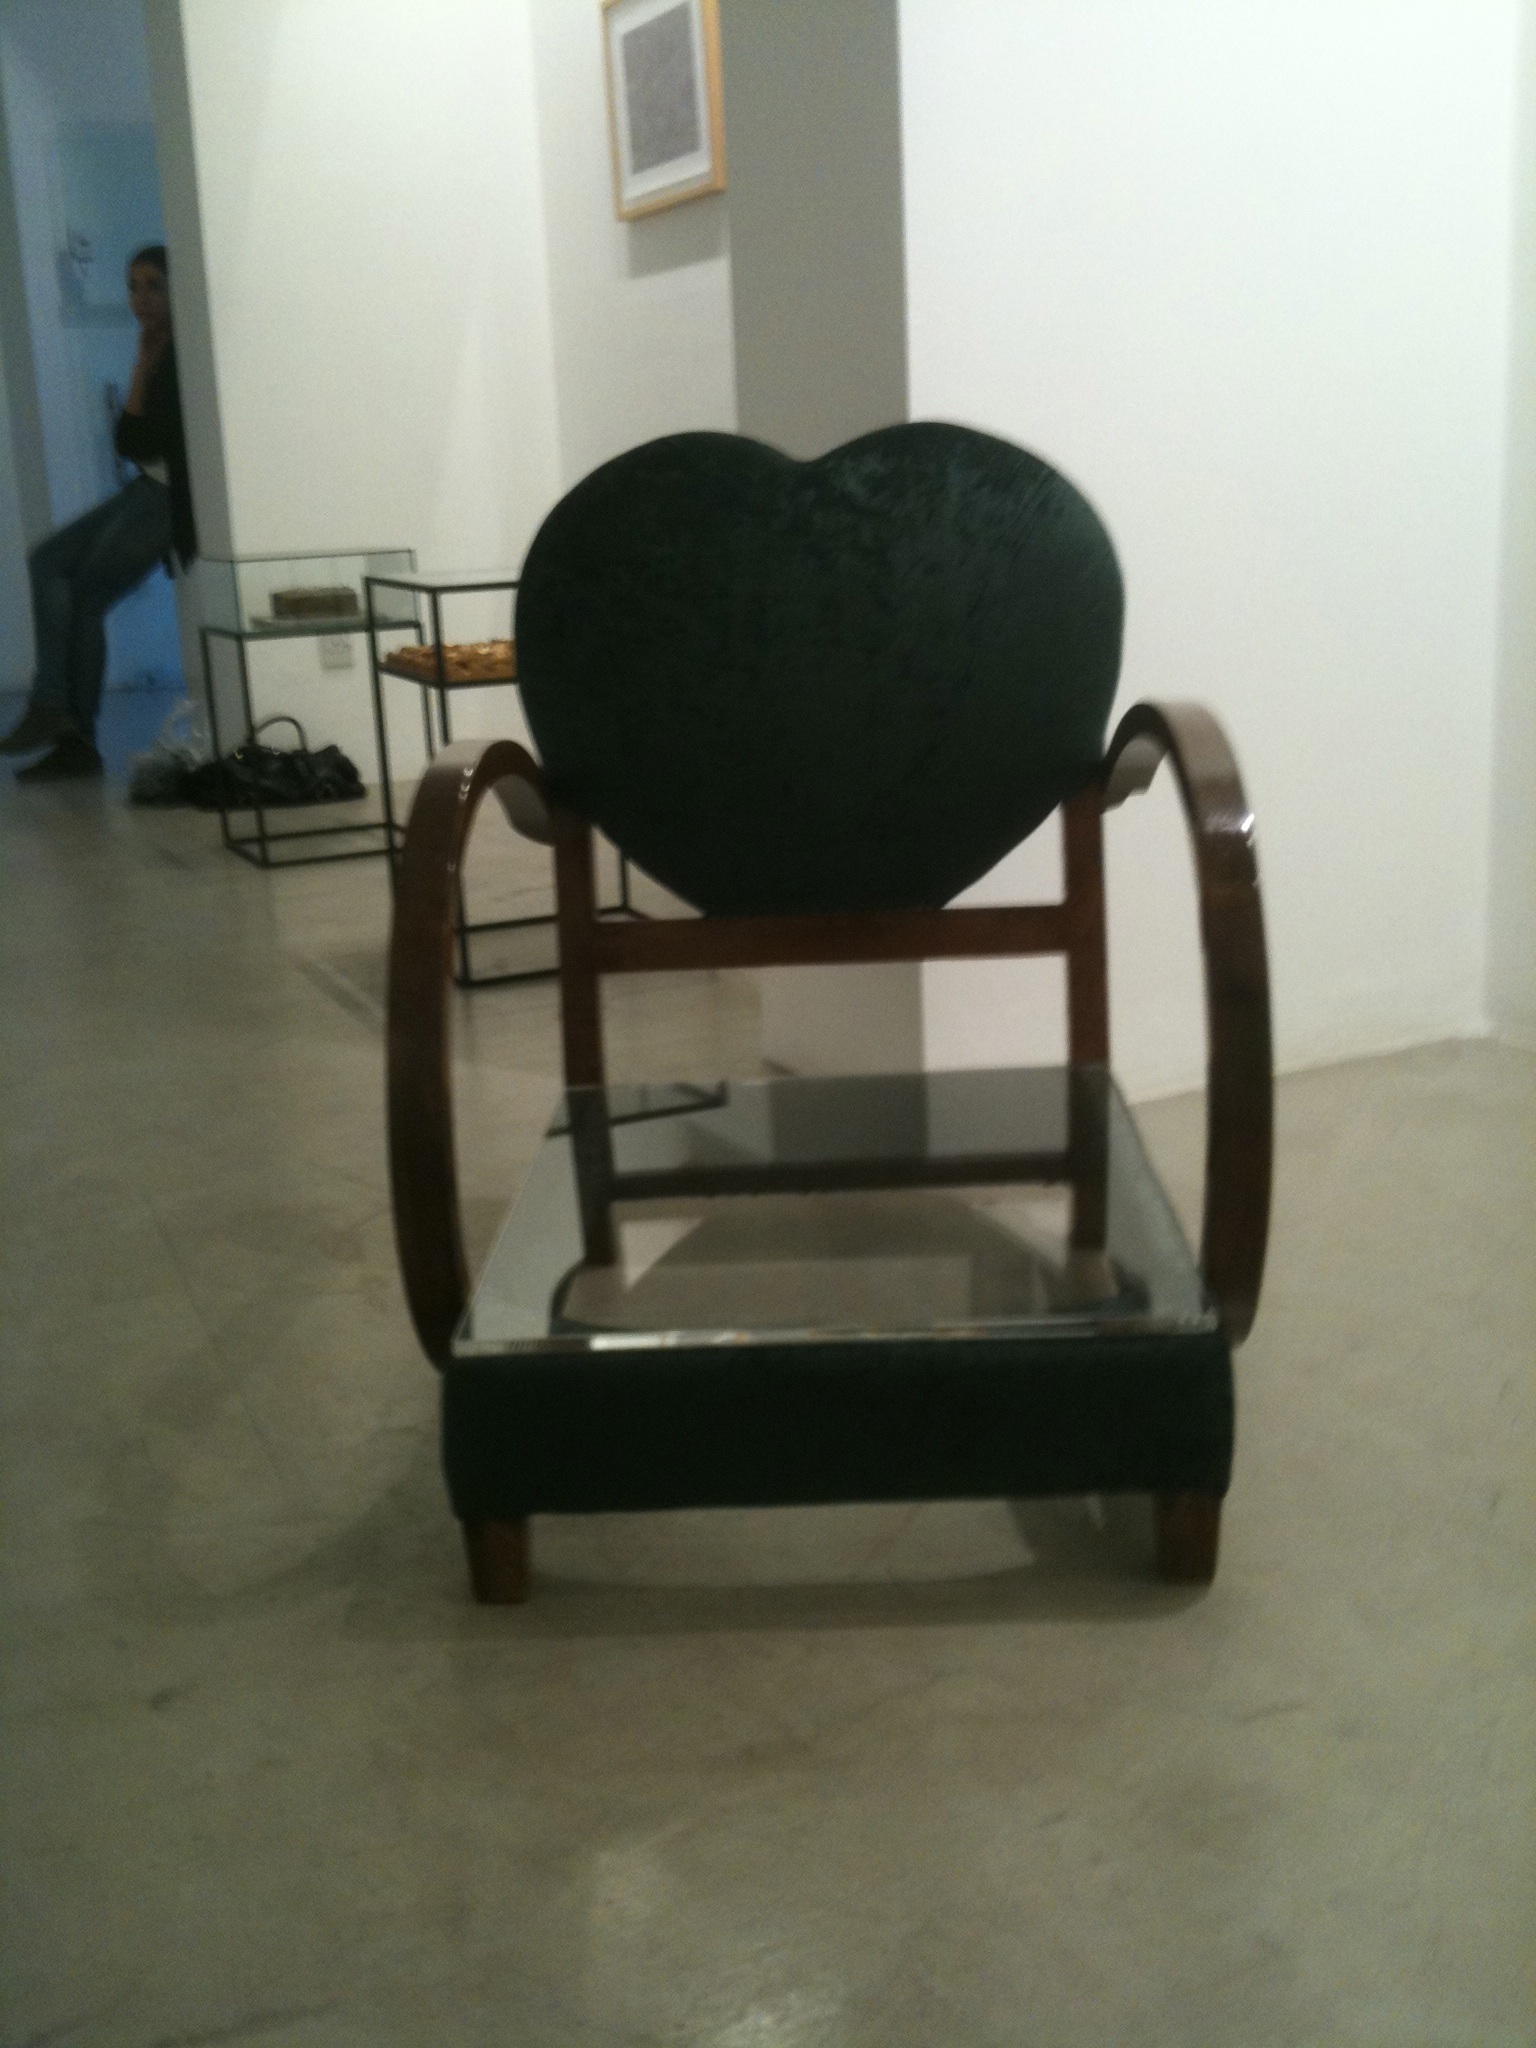   Green Chair. Nicosia, Cyprus 13 - 30 October 2010. Diatopos Art Centre.  